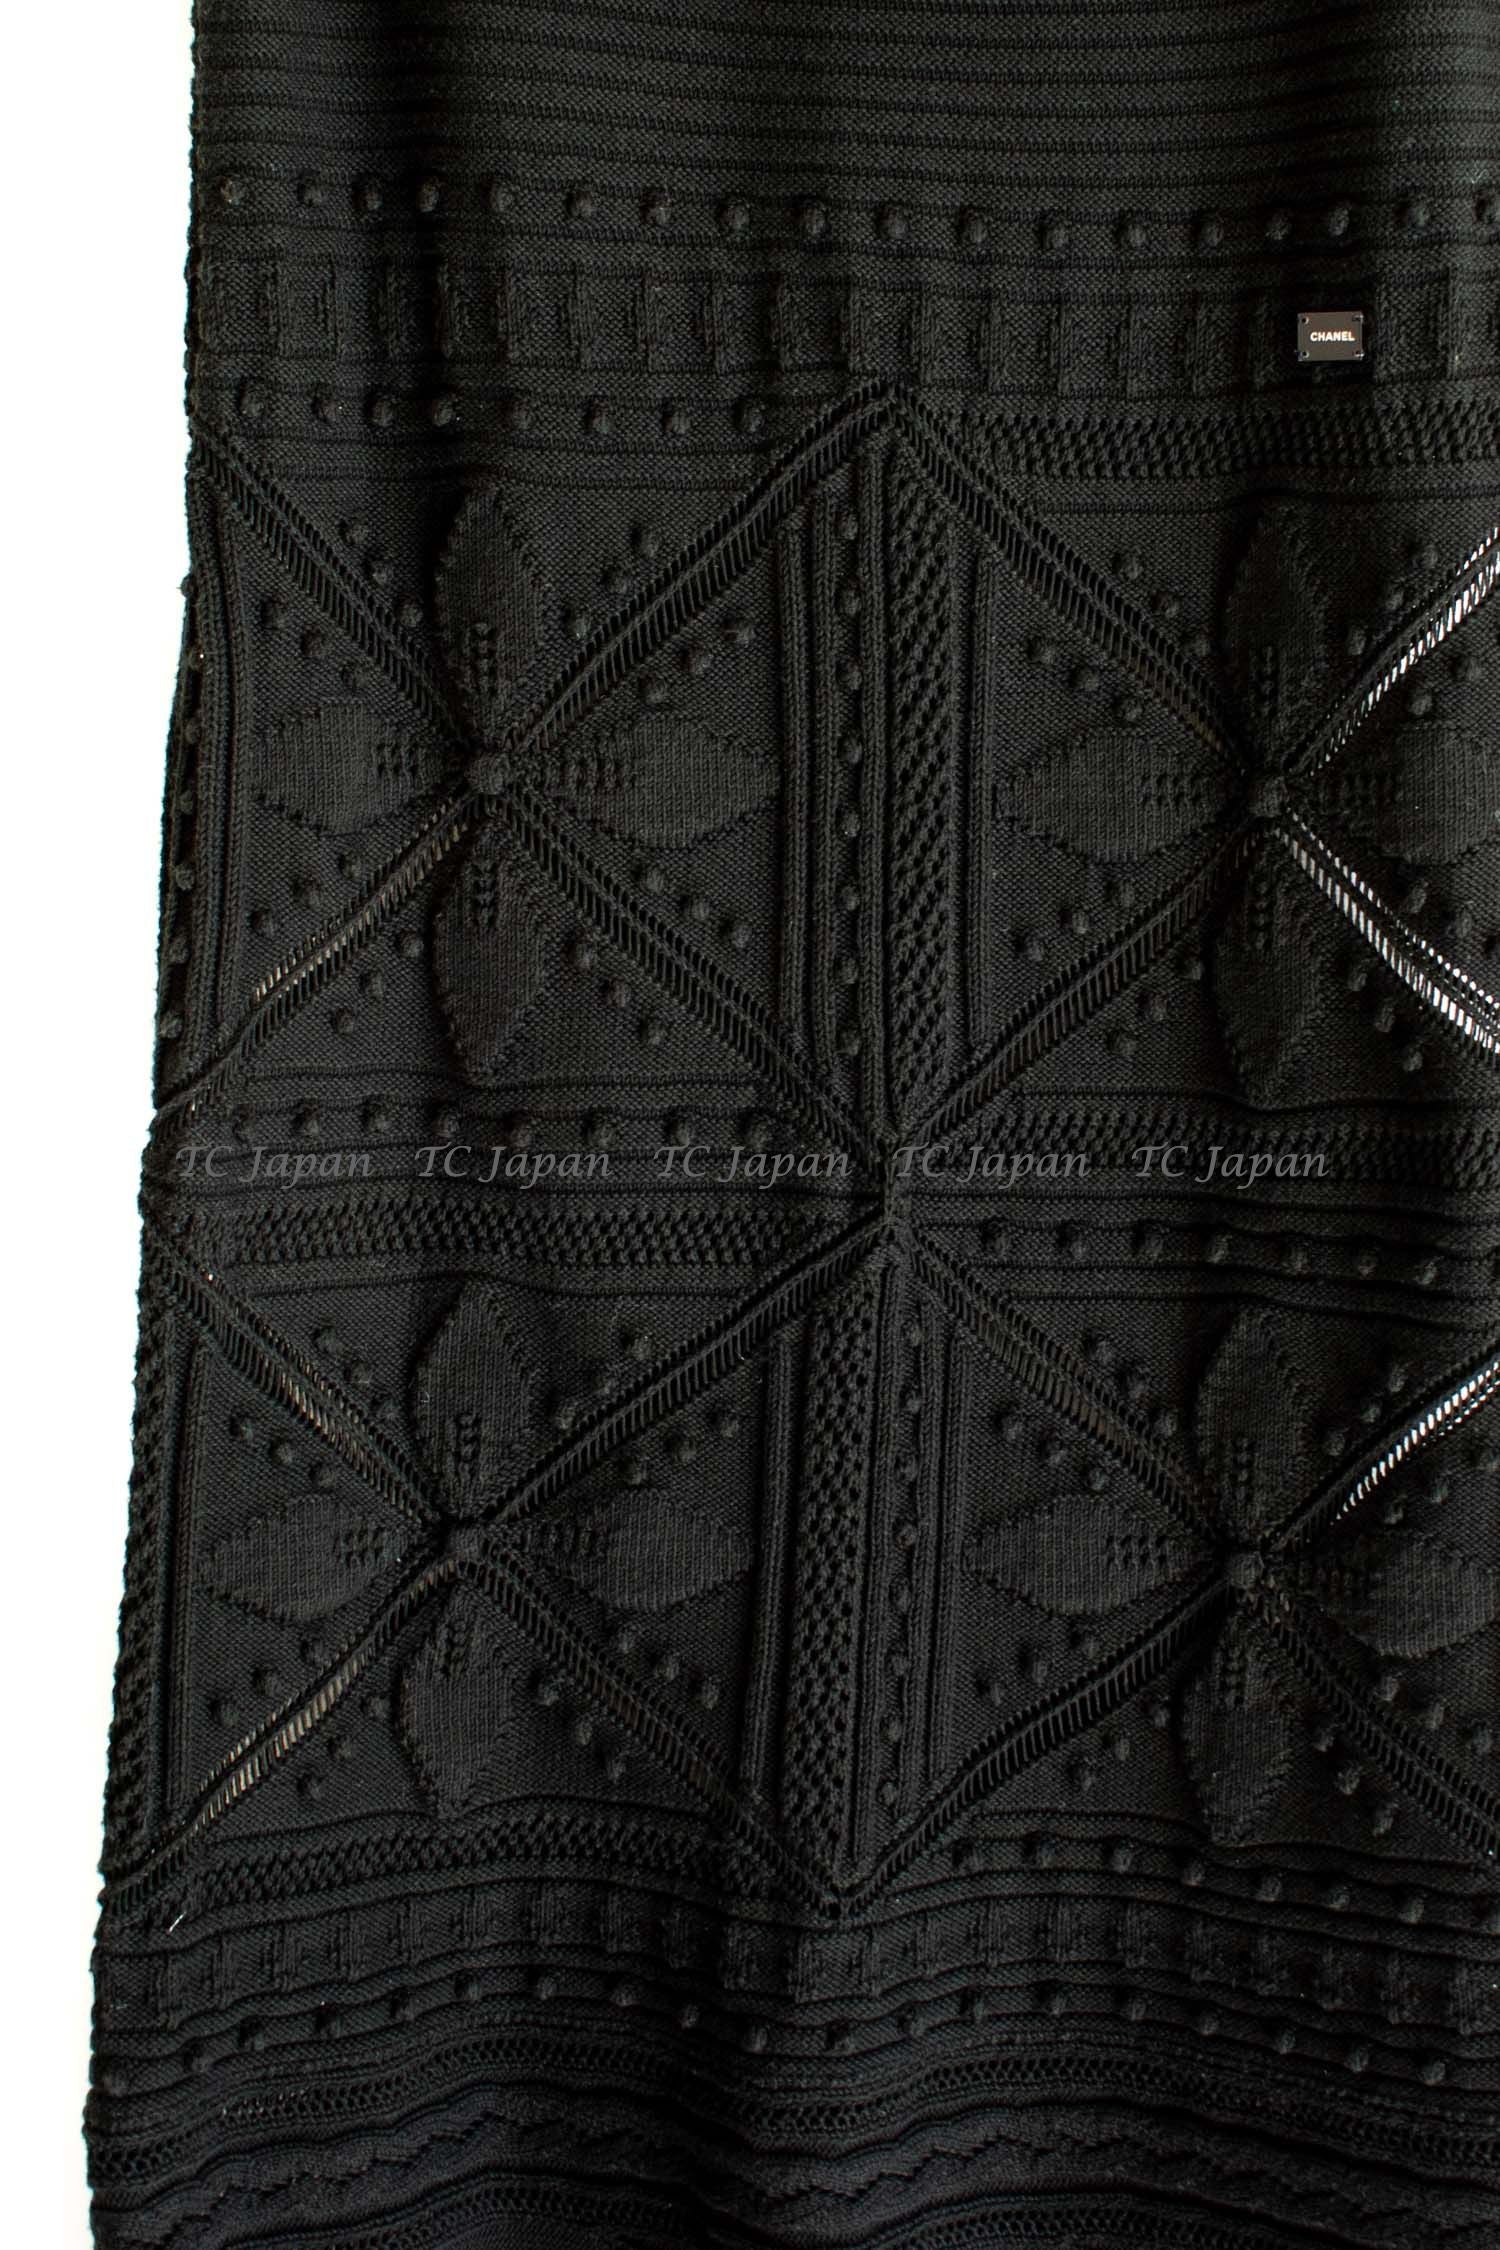 CHANEL 04S Black Cotton Crochet Knit Dress 34 36 38 シャネル ブラック・コットン クロシェ ニット ワンピース 即発